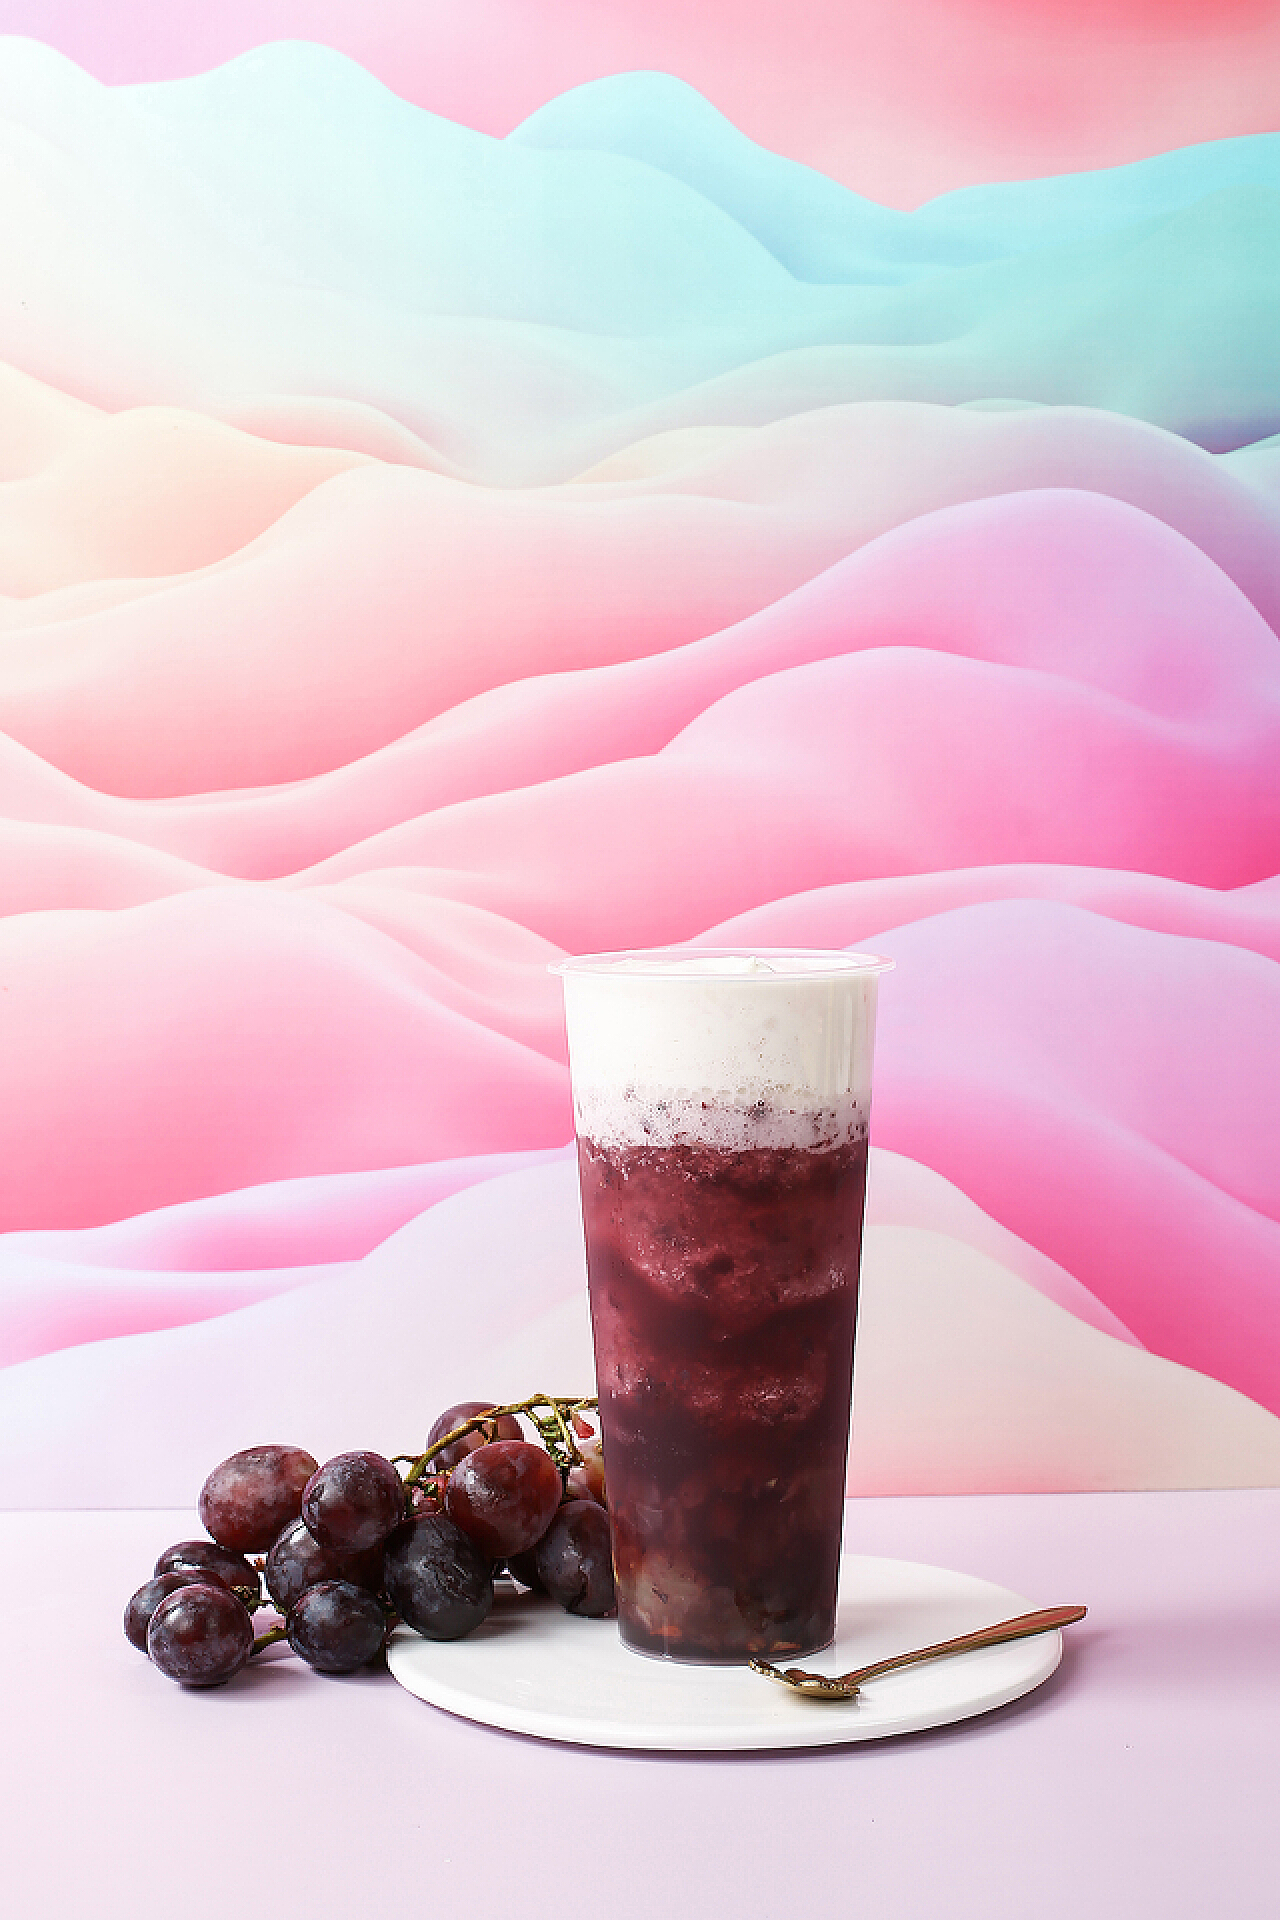 2022喜茶(领展购物广场店)美食餐厅,还有最爱的芝士奶盖 🏣口感...【去哪儿攻略】